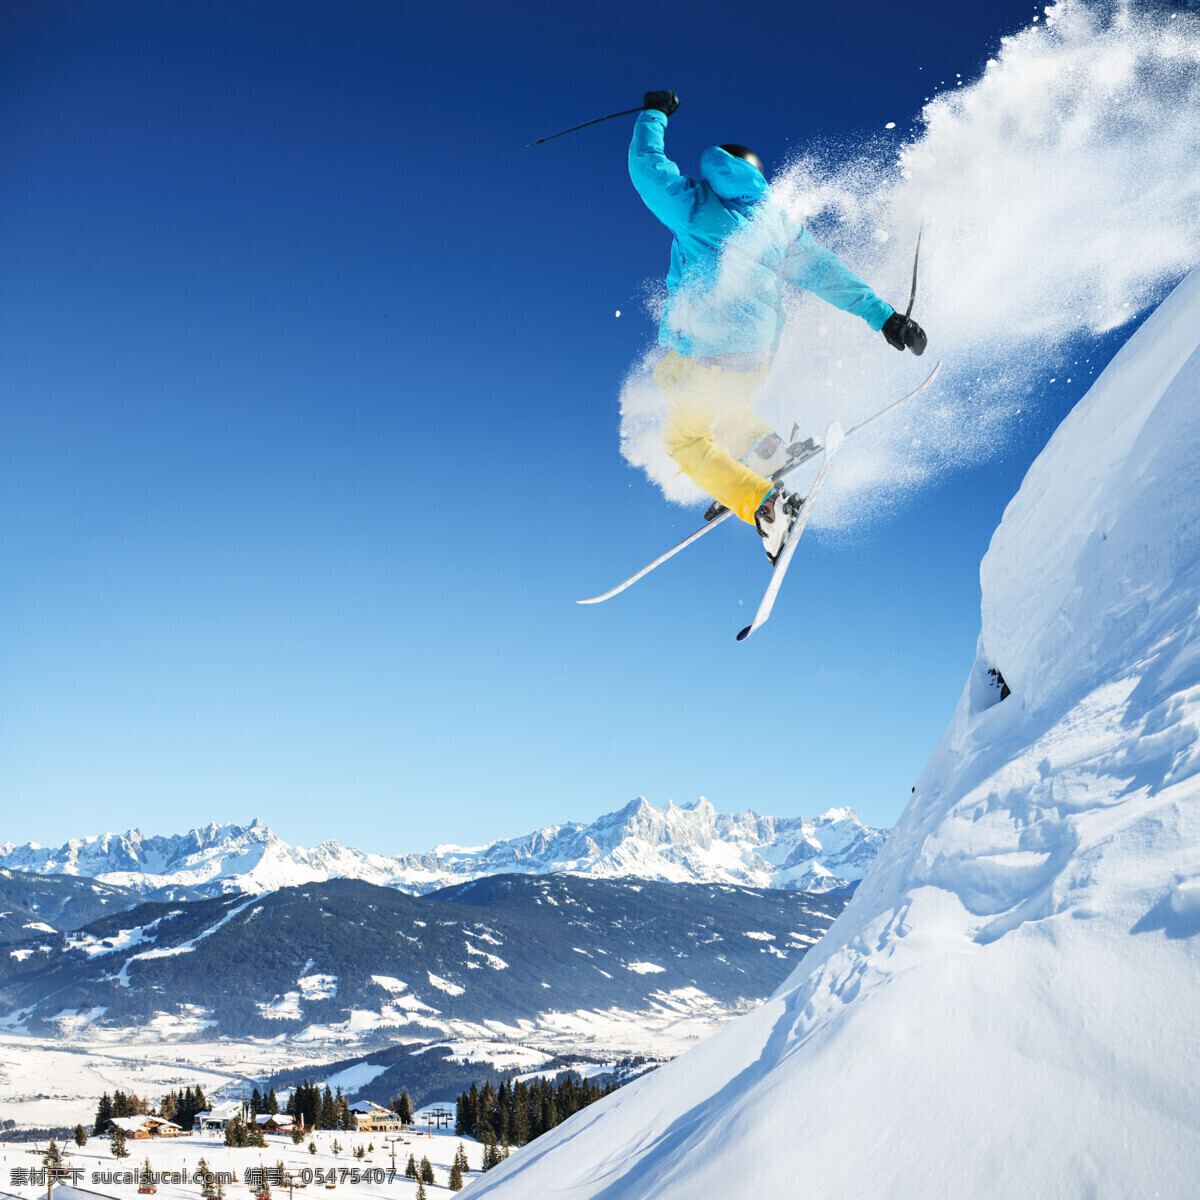 腾空 跳跃 滑雪 运动员 雪地运动 划雪运动 极限运动 体育项目 滑雪图片 生活百科